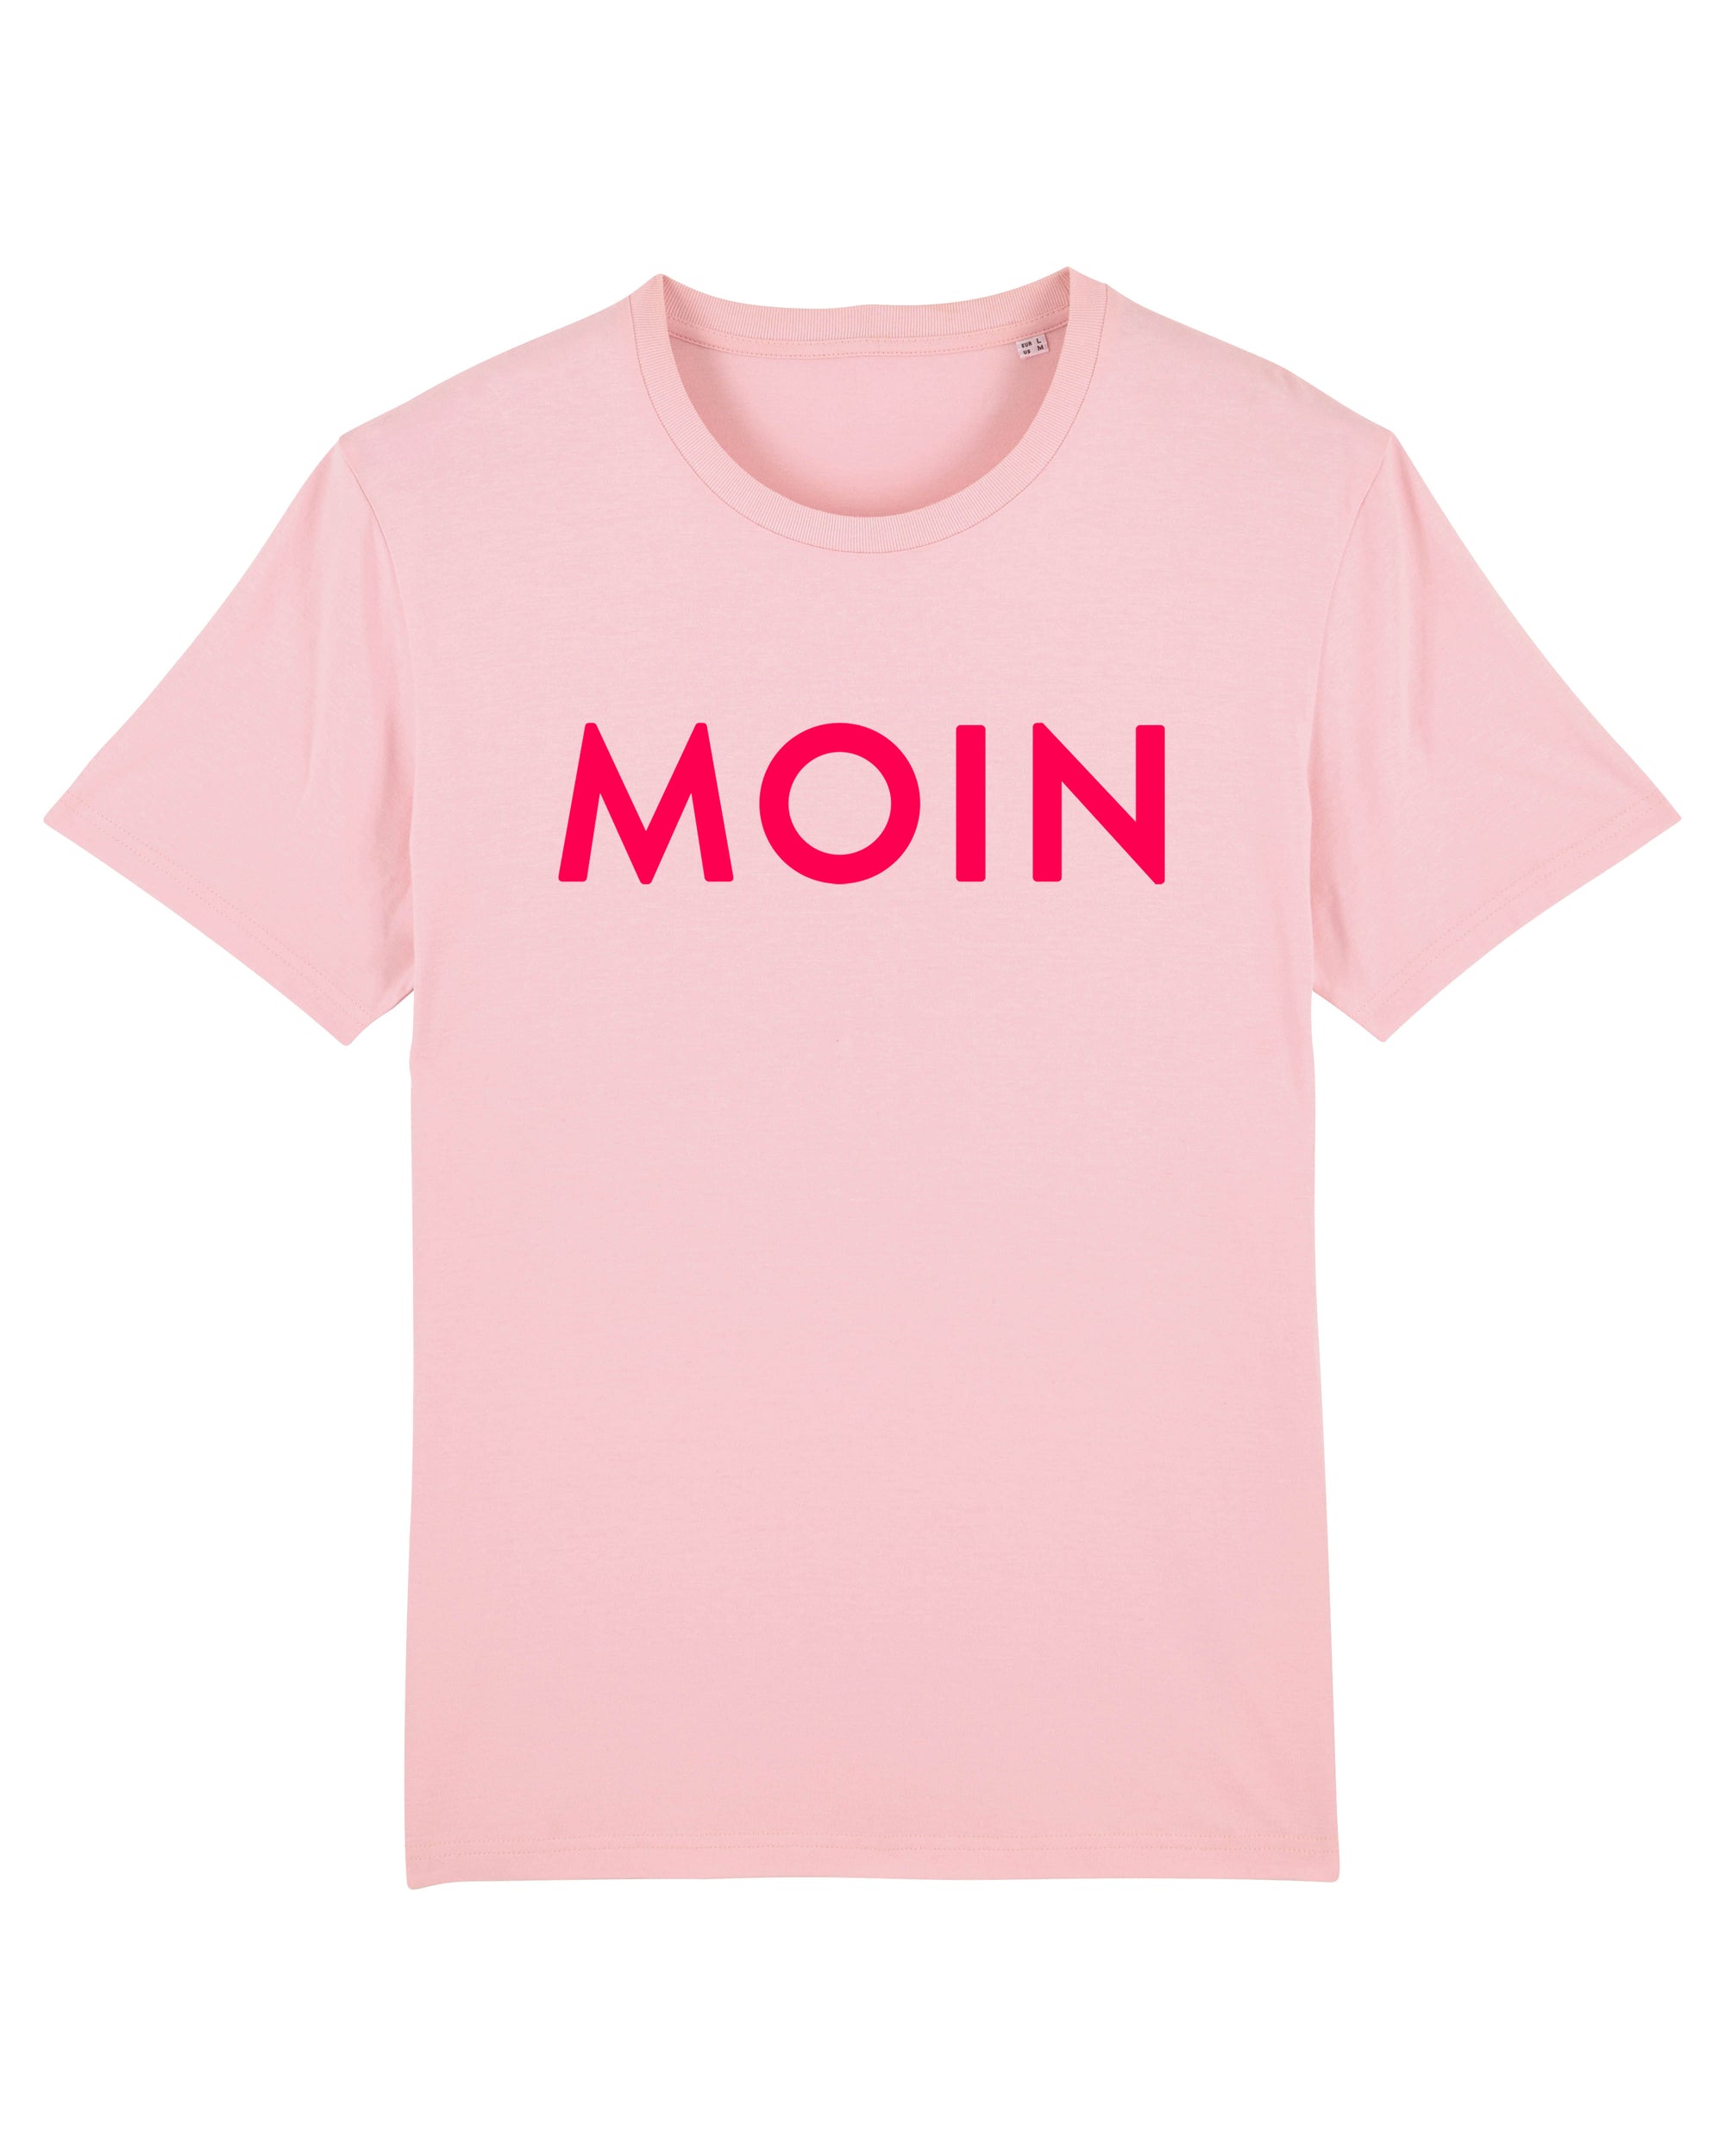 T-Shirt "Moin" Cotton Pink/Neonrot